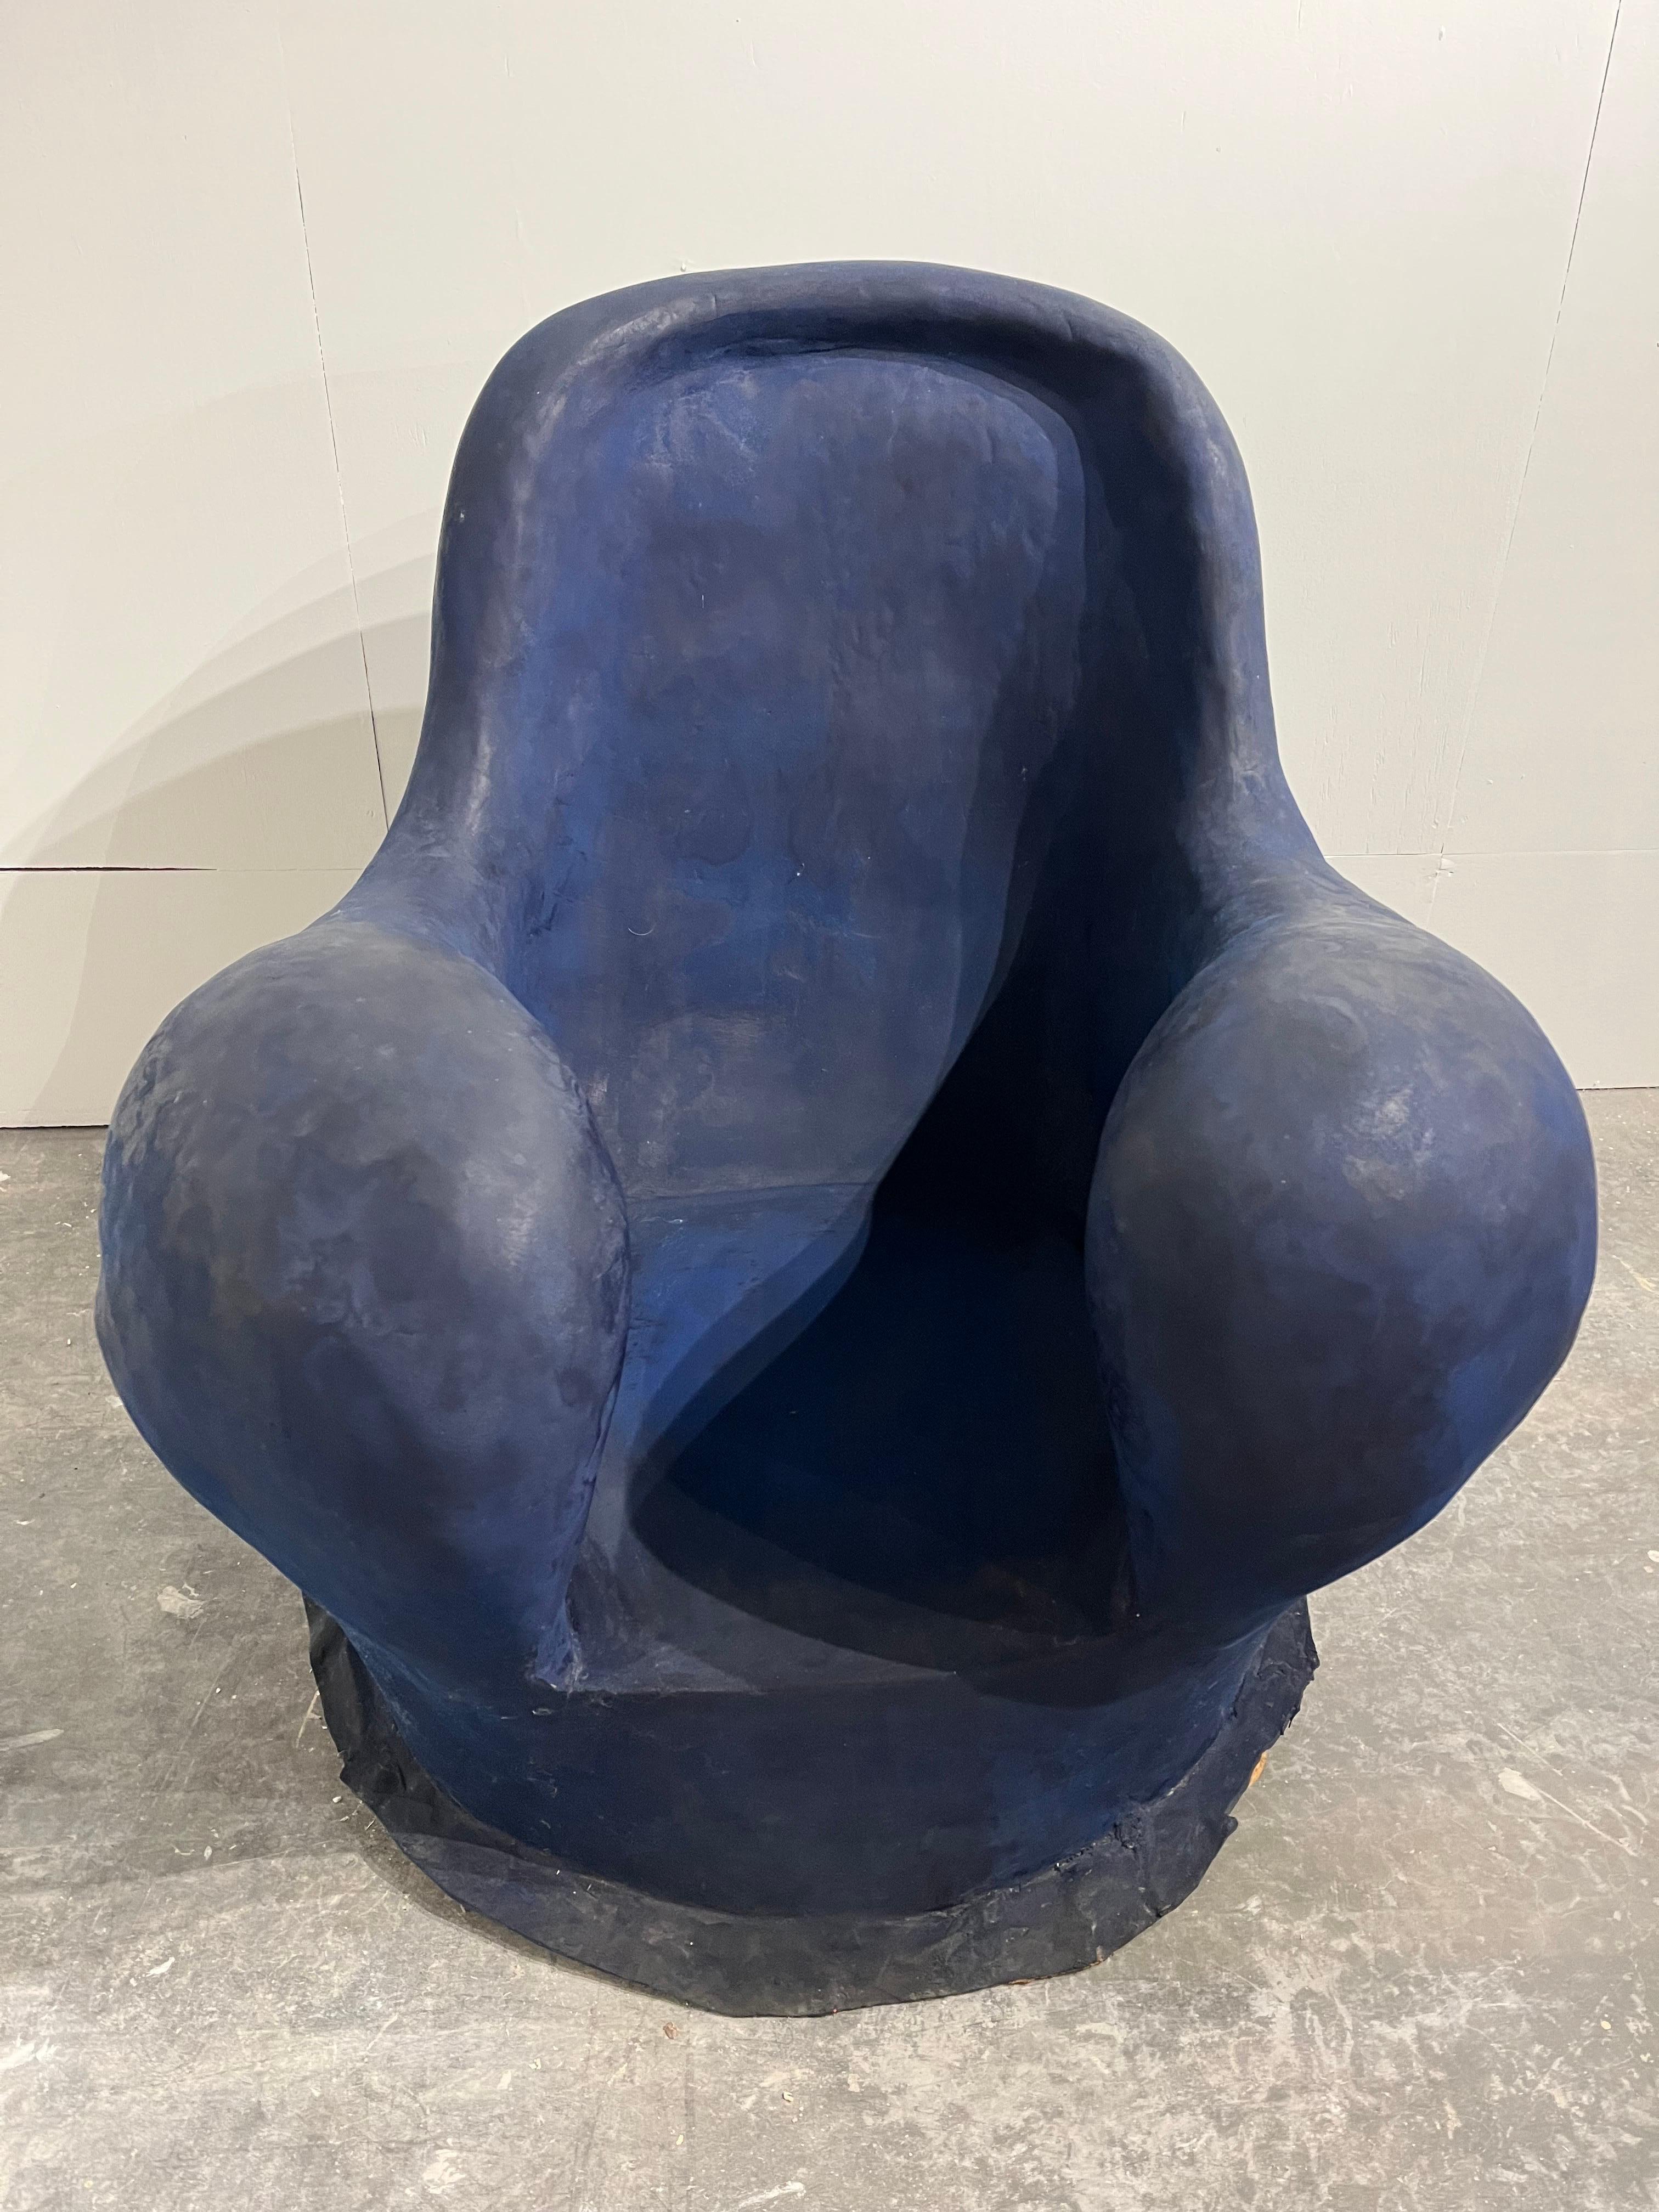 Louis Durot French Post War Contemporary Artist Blue Polymer Armchair Sculpture 11